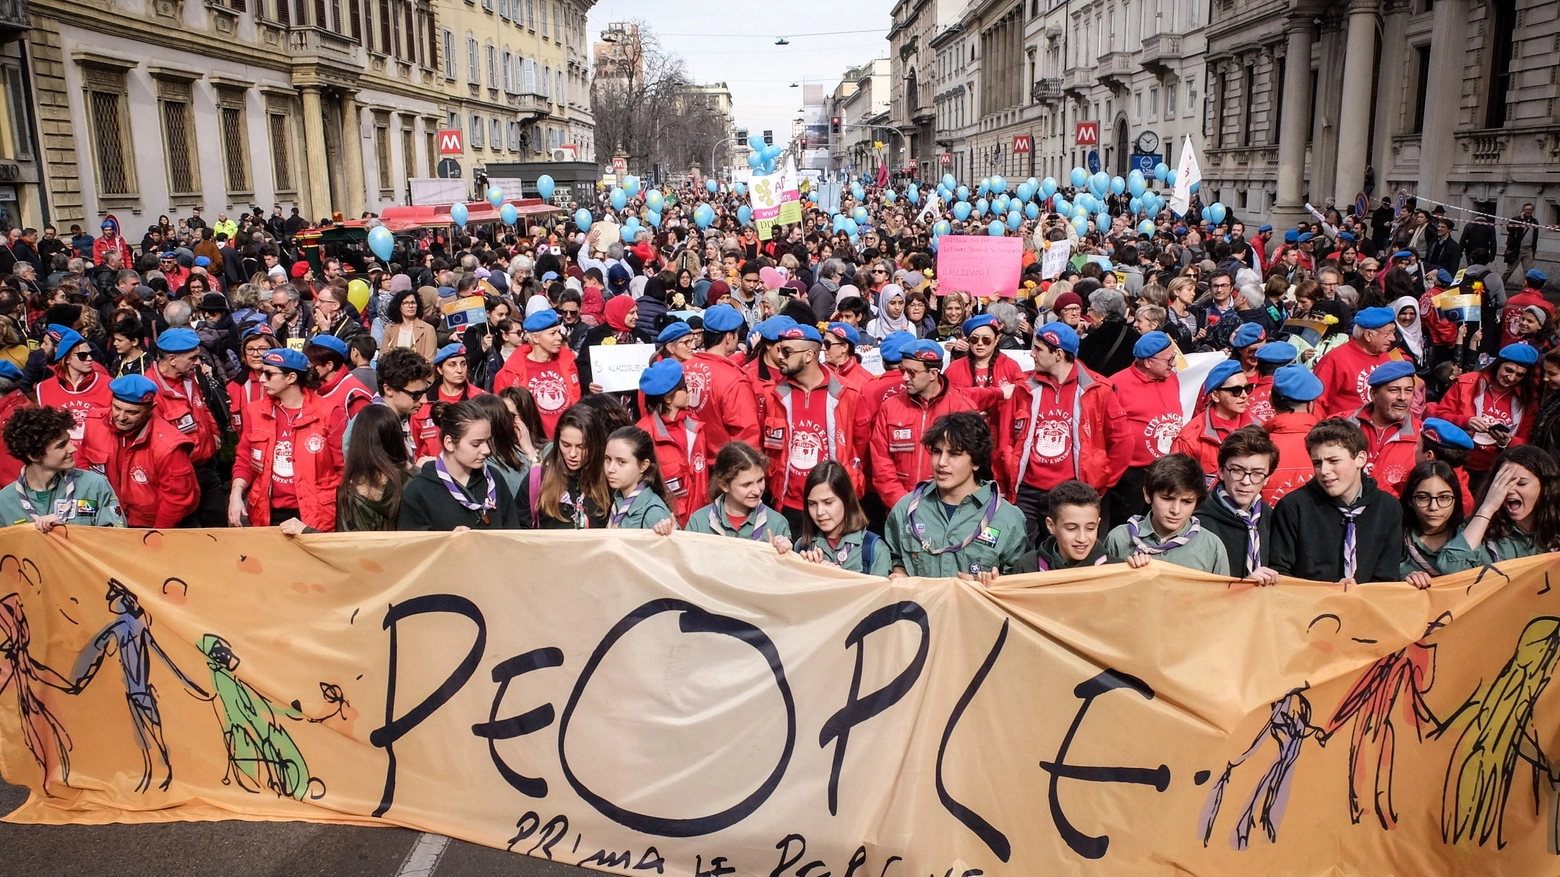 'People - Prima le persone', a Milano la marcia antirazzista per i diritti di tutti